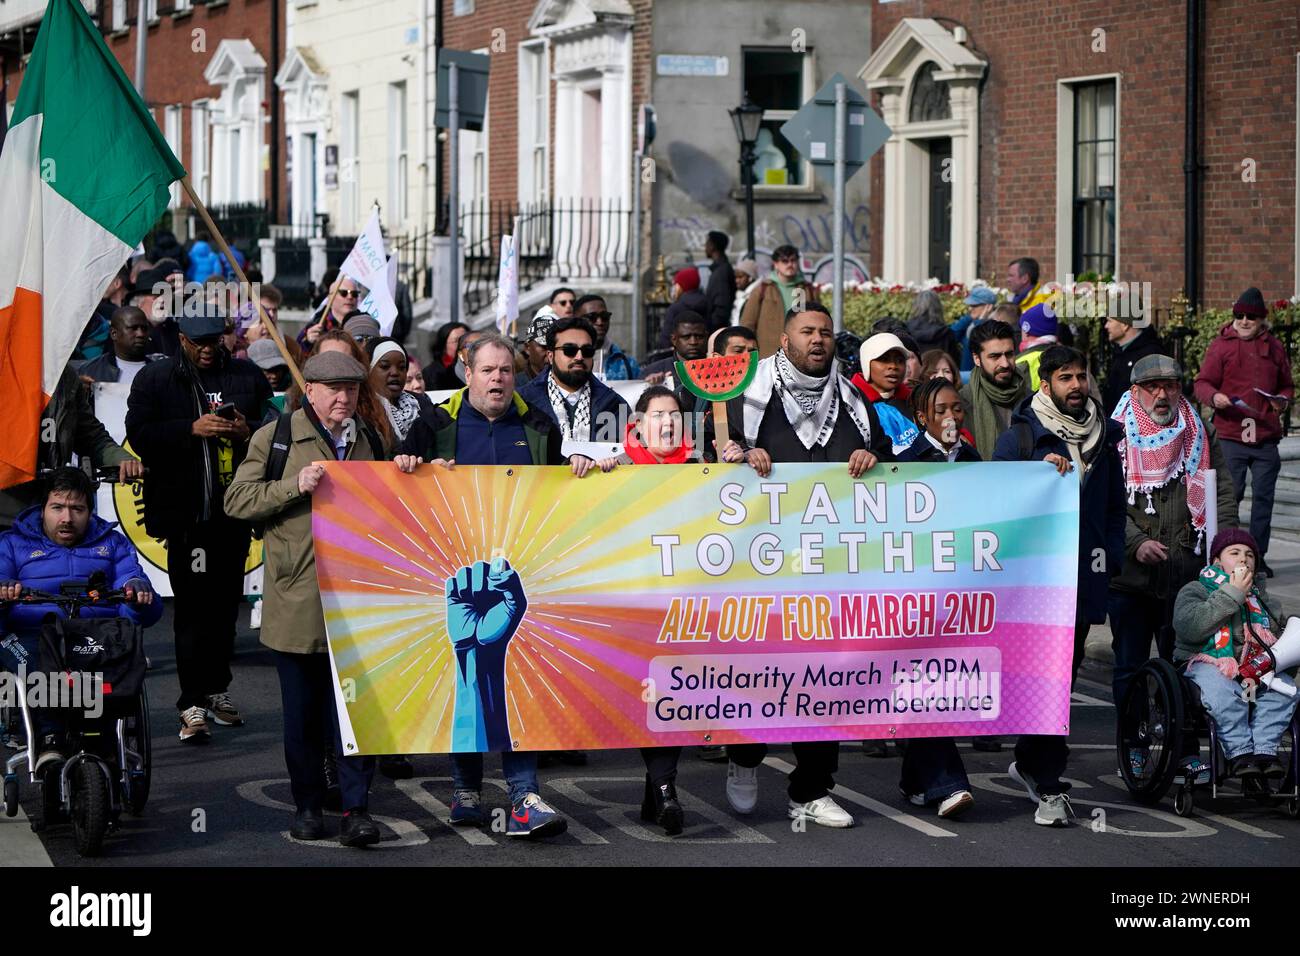 Die Menschen während des solidaritätsmarsches in Dublin. Die Demonstration wird durchgeführt, um die Unterstützung für Vielfalt und Gleichheit zu zeigen und Rassismus, Hass und Krieg anzuprangern. Bilddatum: Samstag, 2. März 2024. Stockfoto